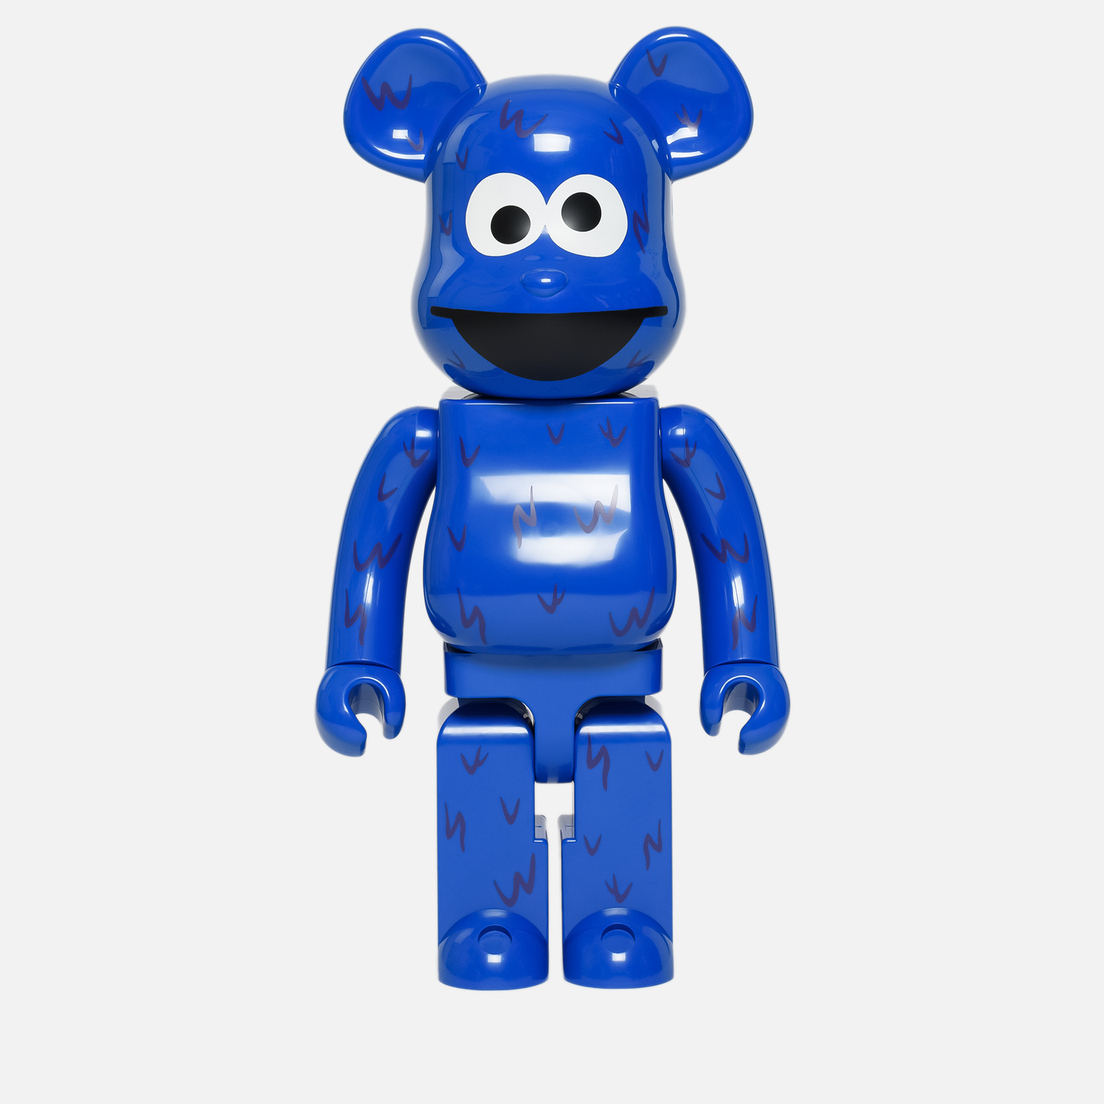 Medicom Toy Игрушка Bearbrick Cookie Monster 1000%